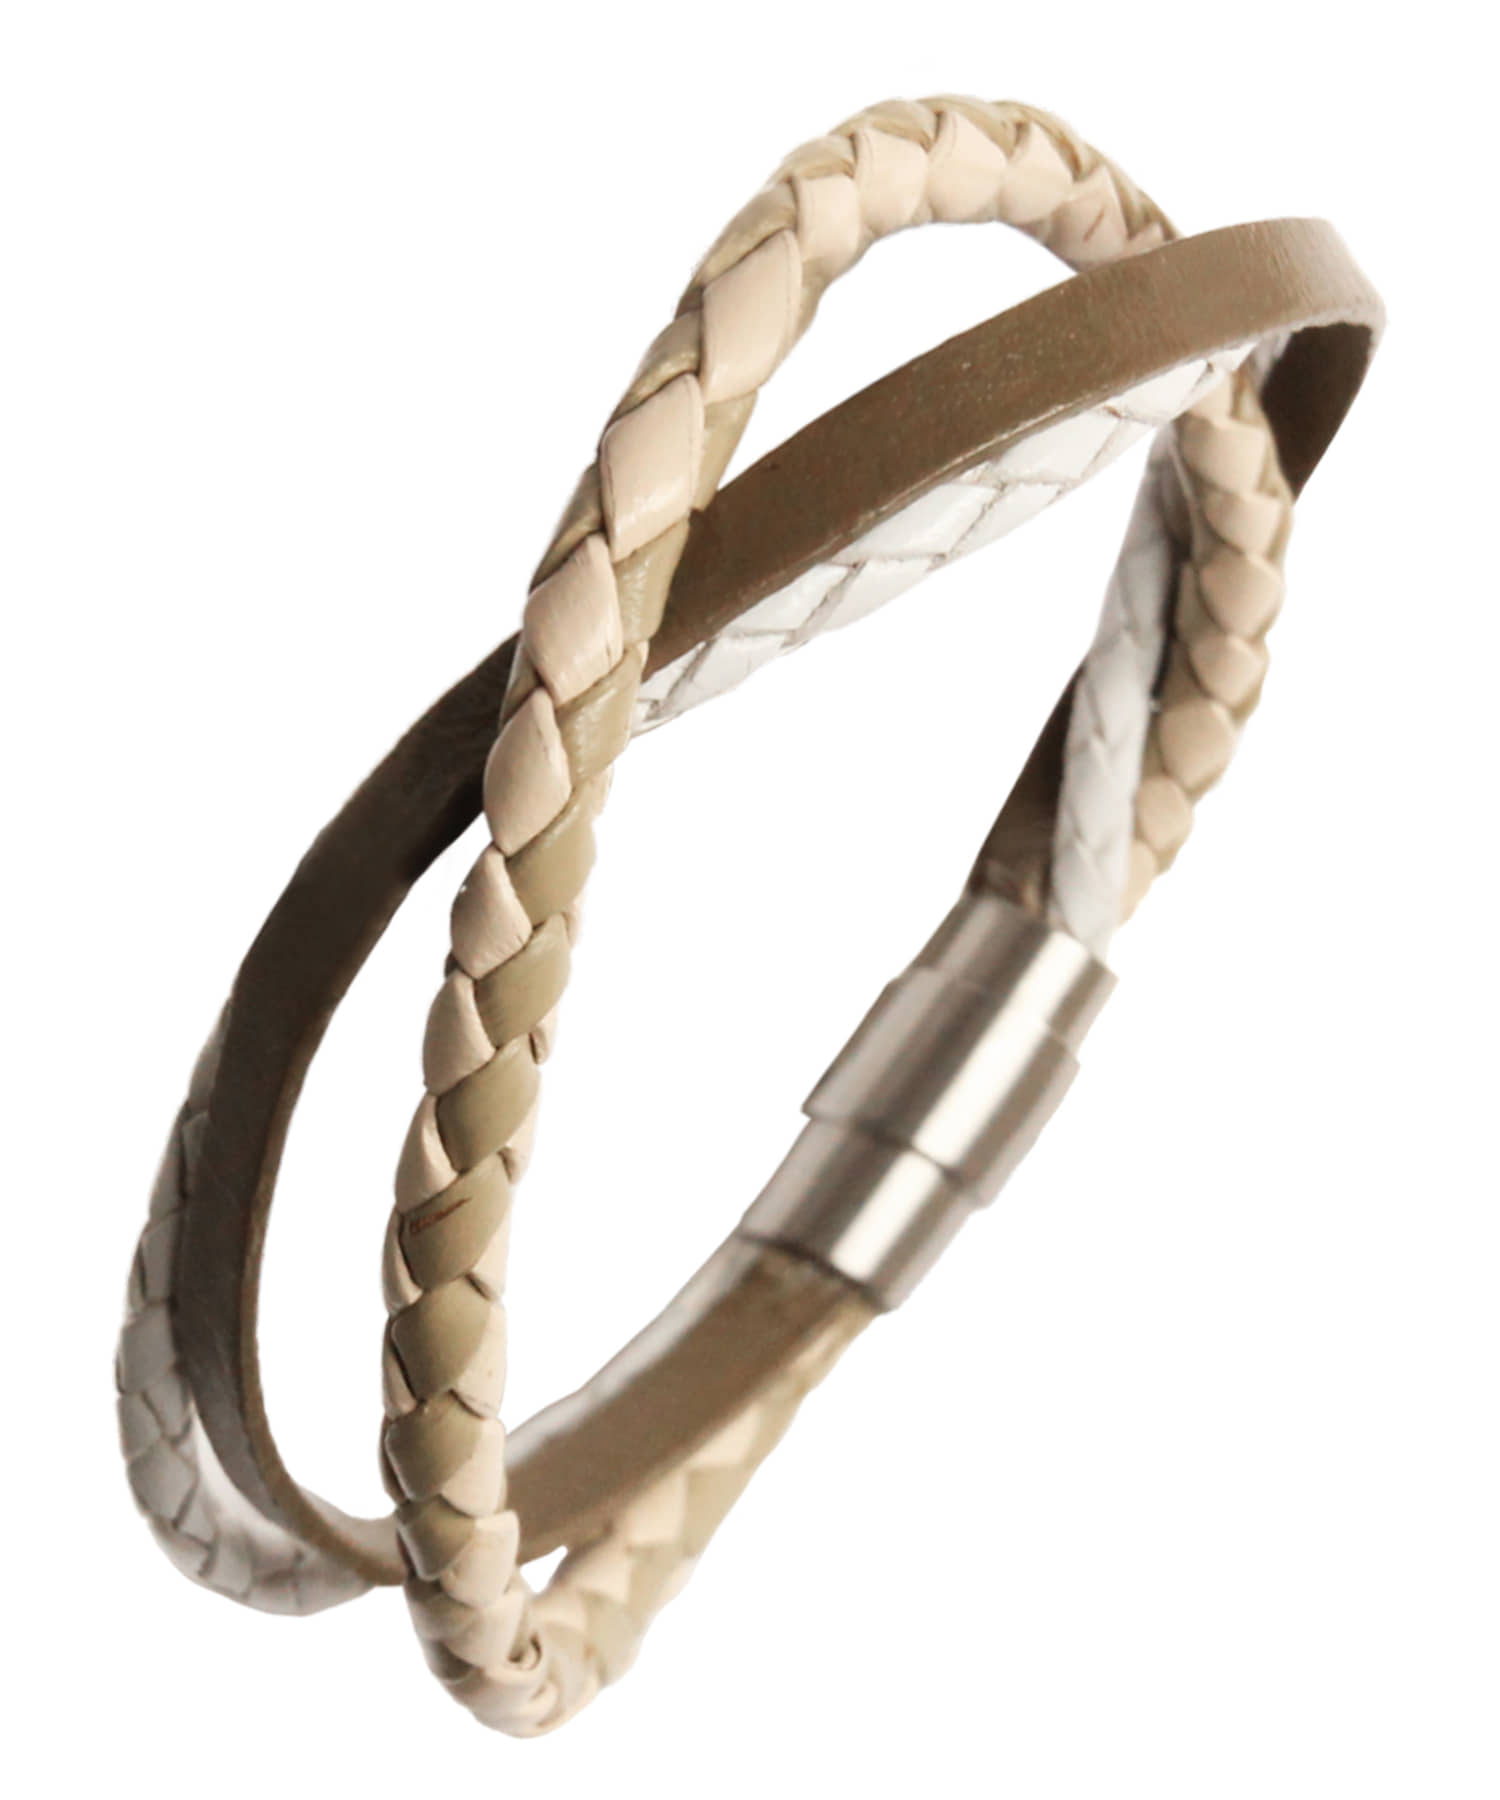 [천연소가죽]Minimal layered leather bracelet BEIGE